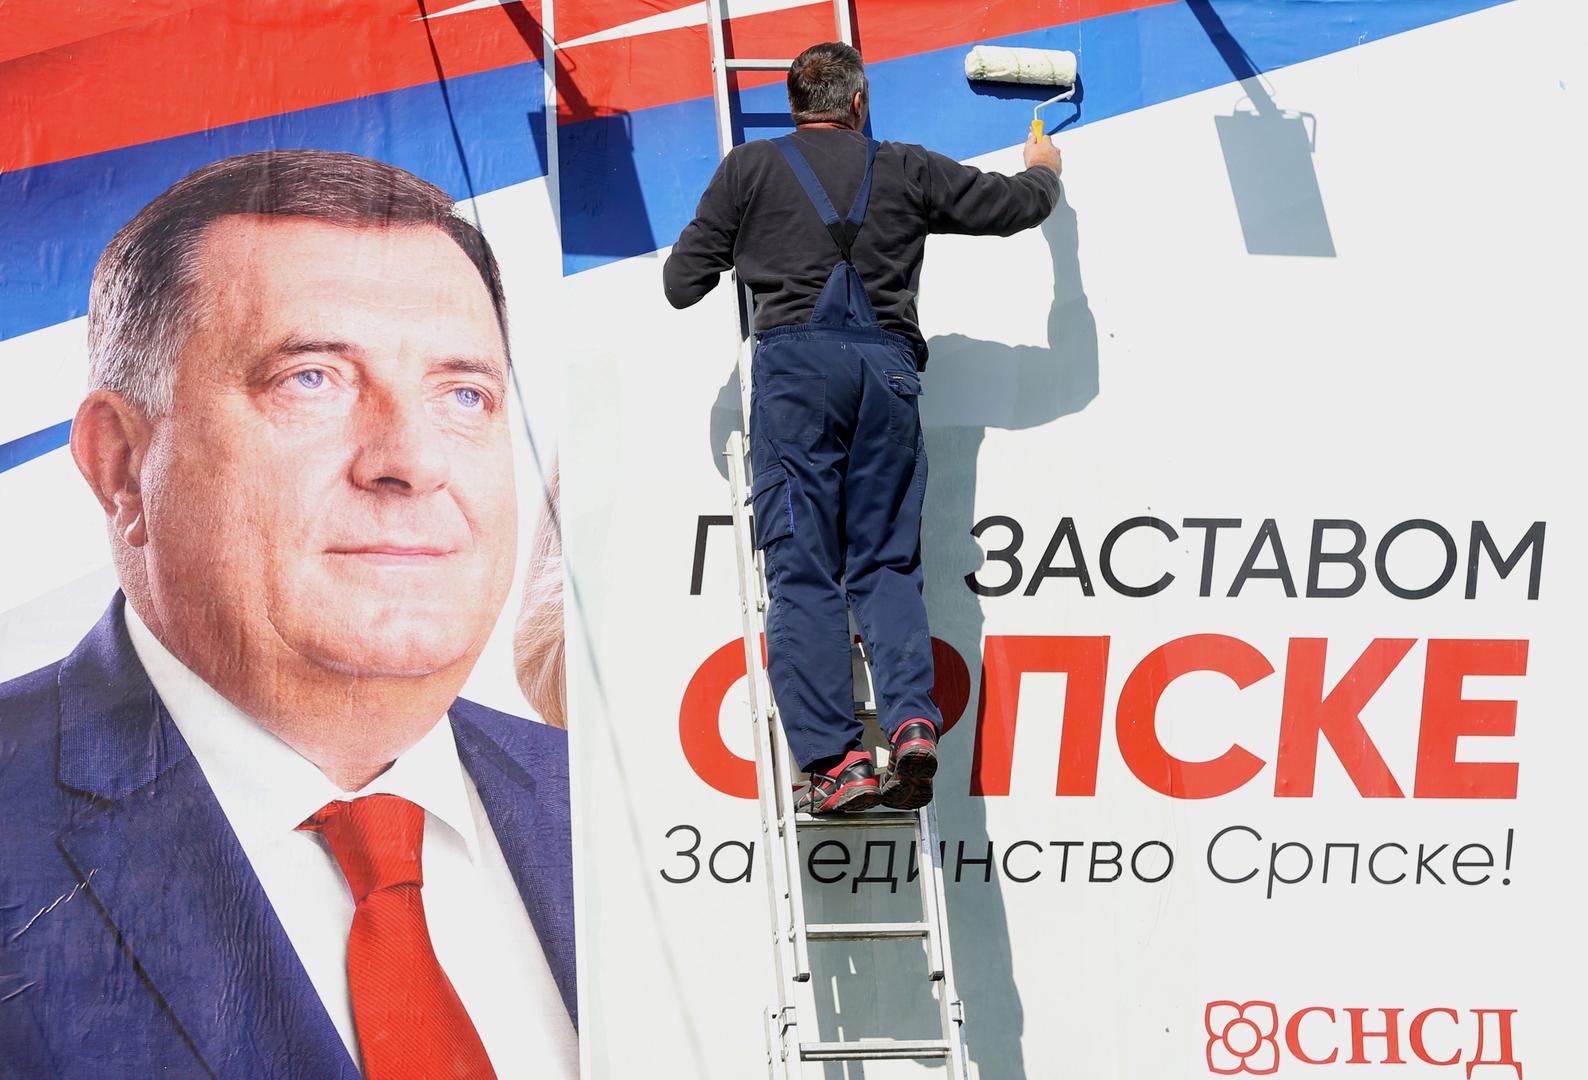 Milorad Dodik zagovara koaliciju tri vodeće nacionalne stranke, kojoj bi se eventualno priključila još jedna ili dvije manje stranke